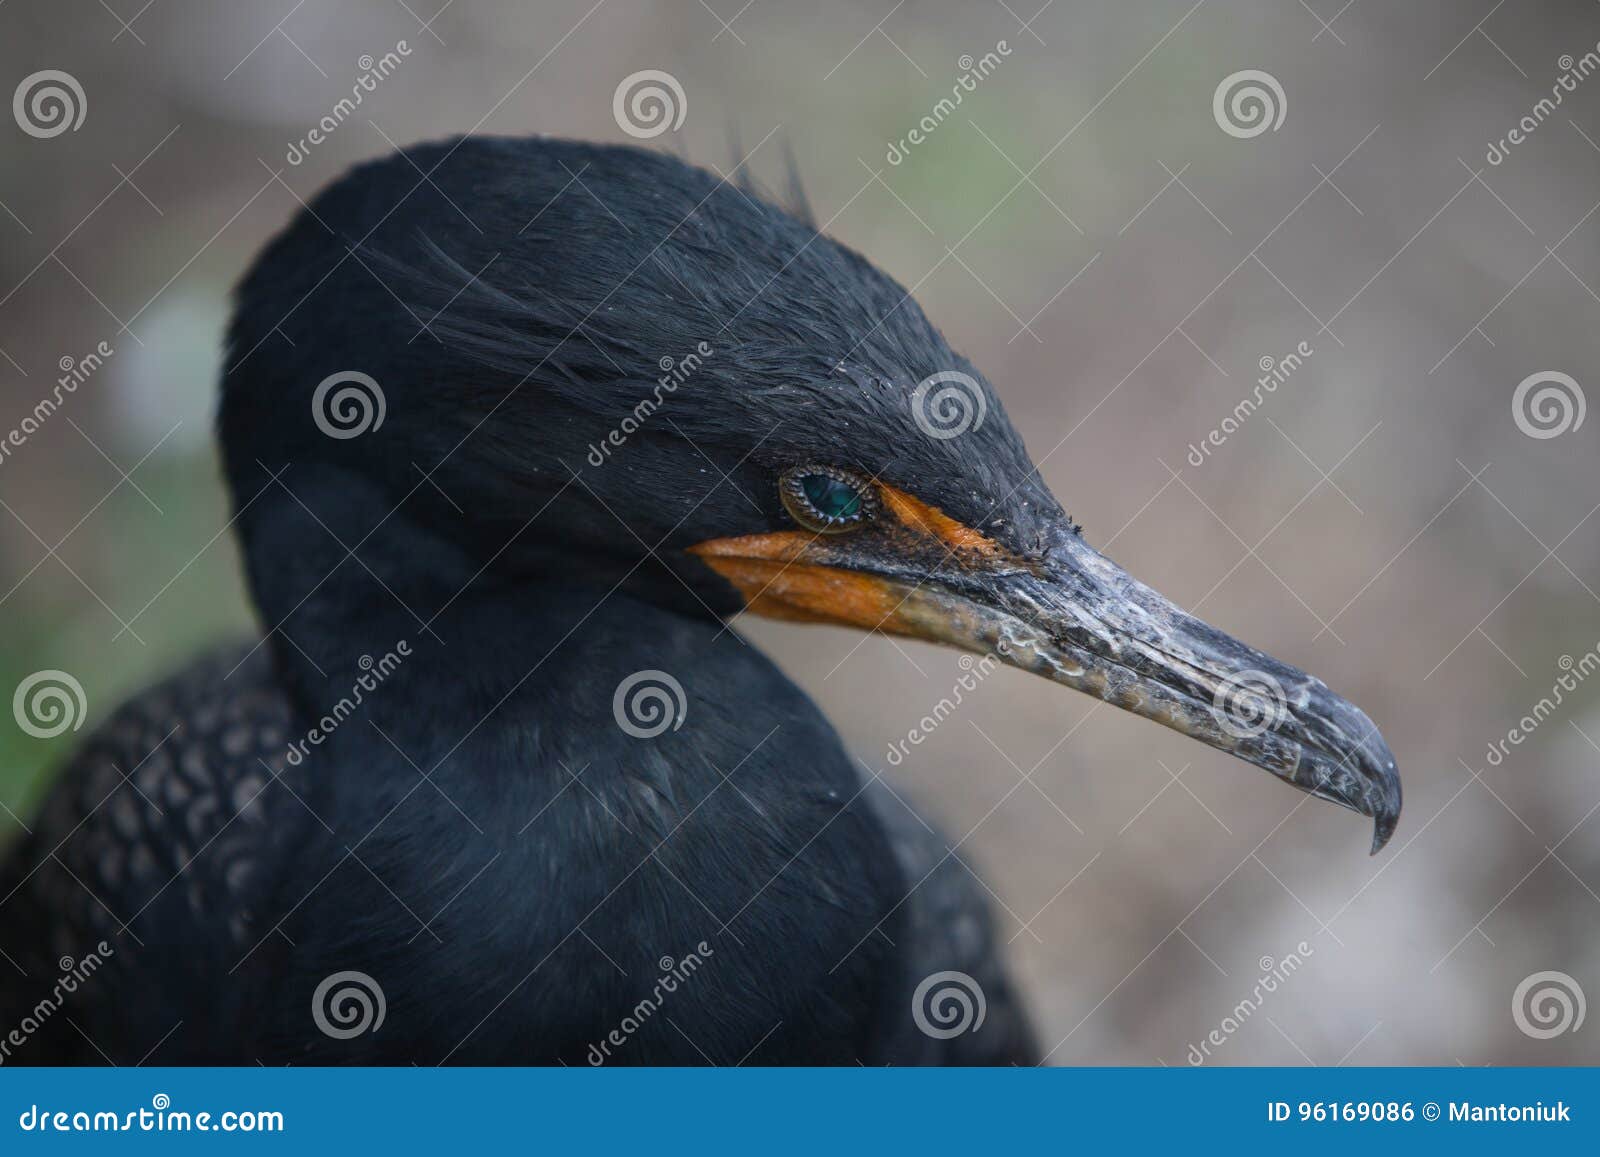 great cormoran